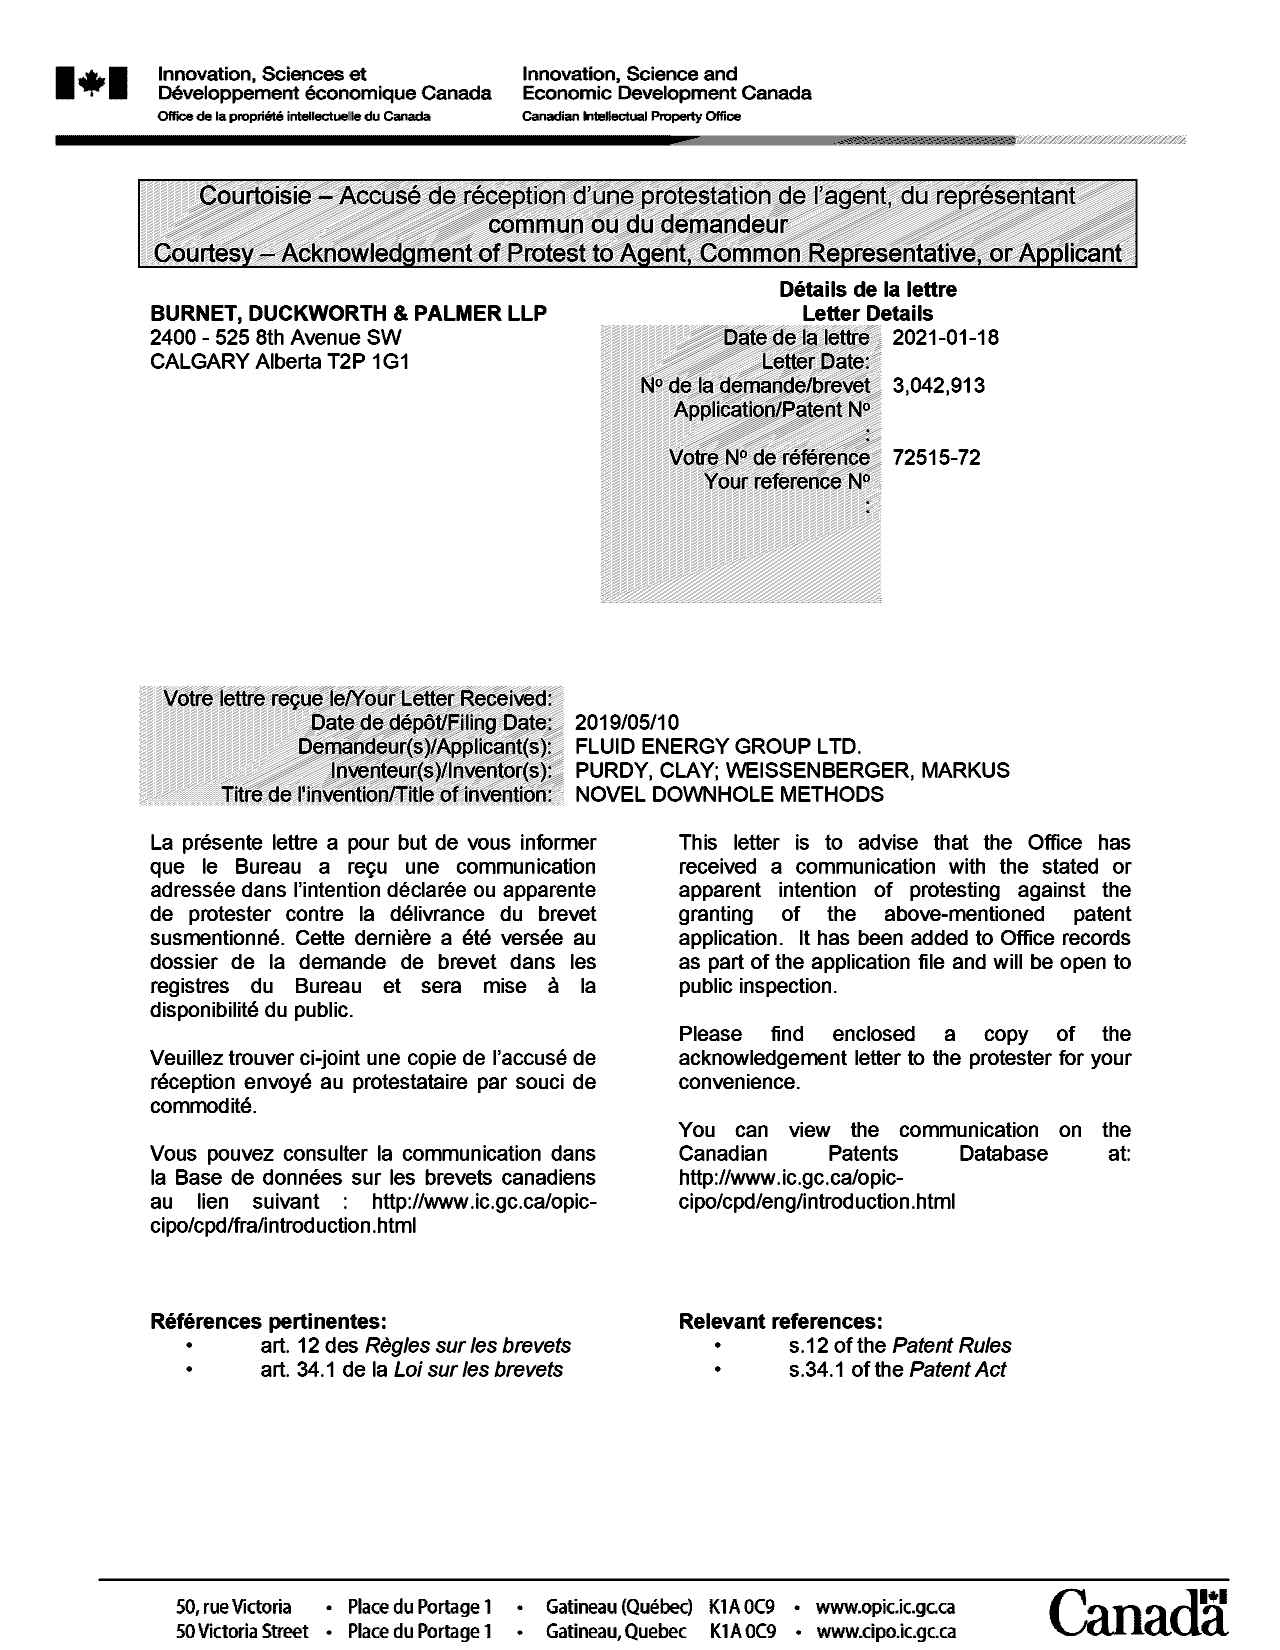 Document de brevet canadien 3042913. Accusé de réception d'antériorité 20210118. Image 1 de 2